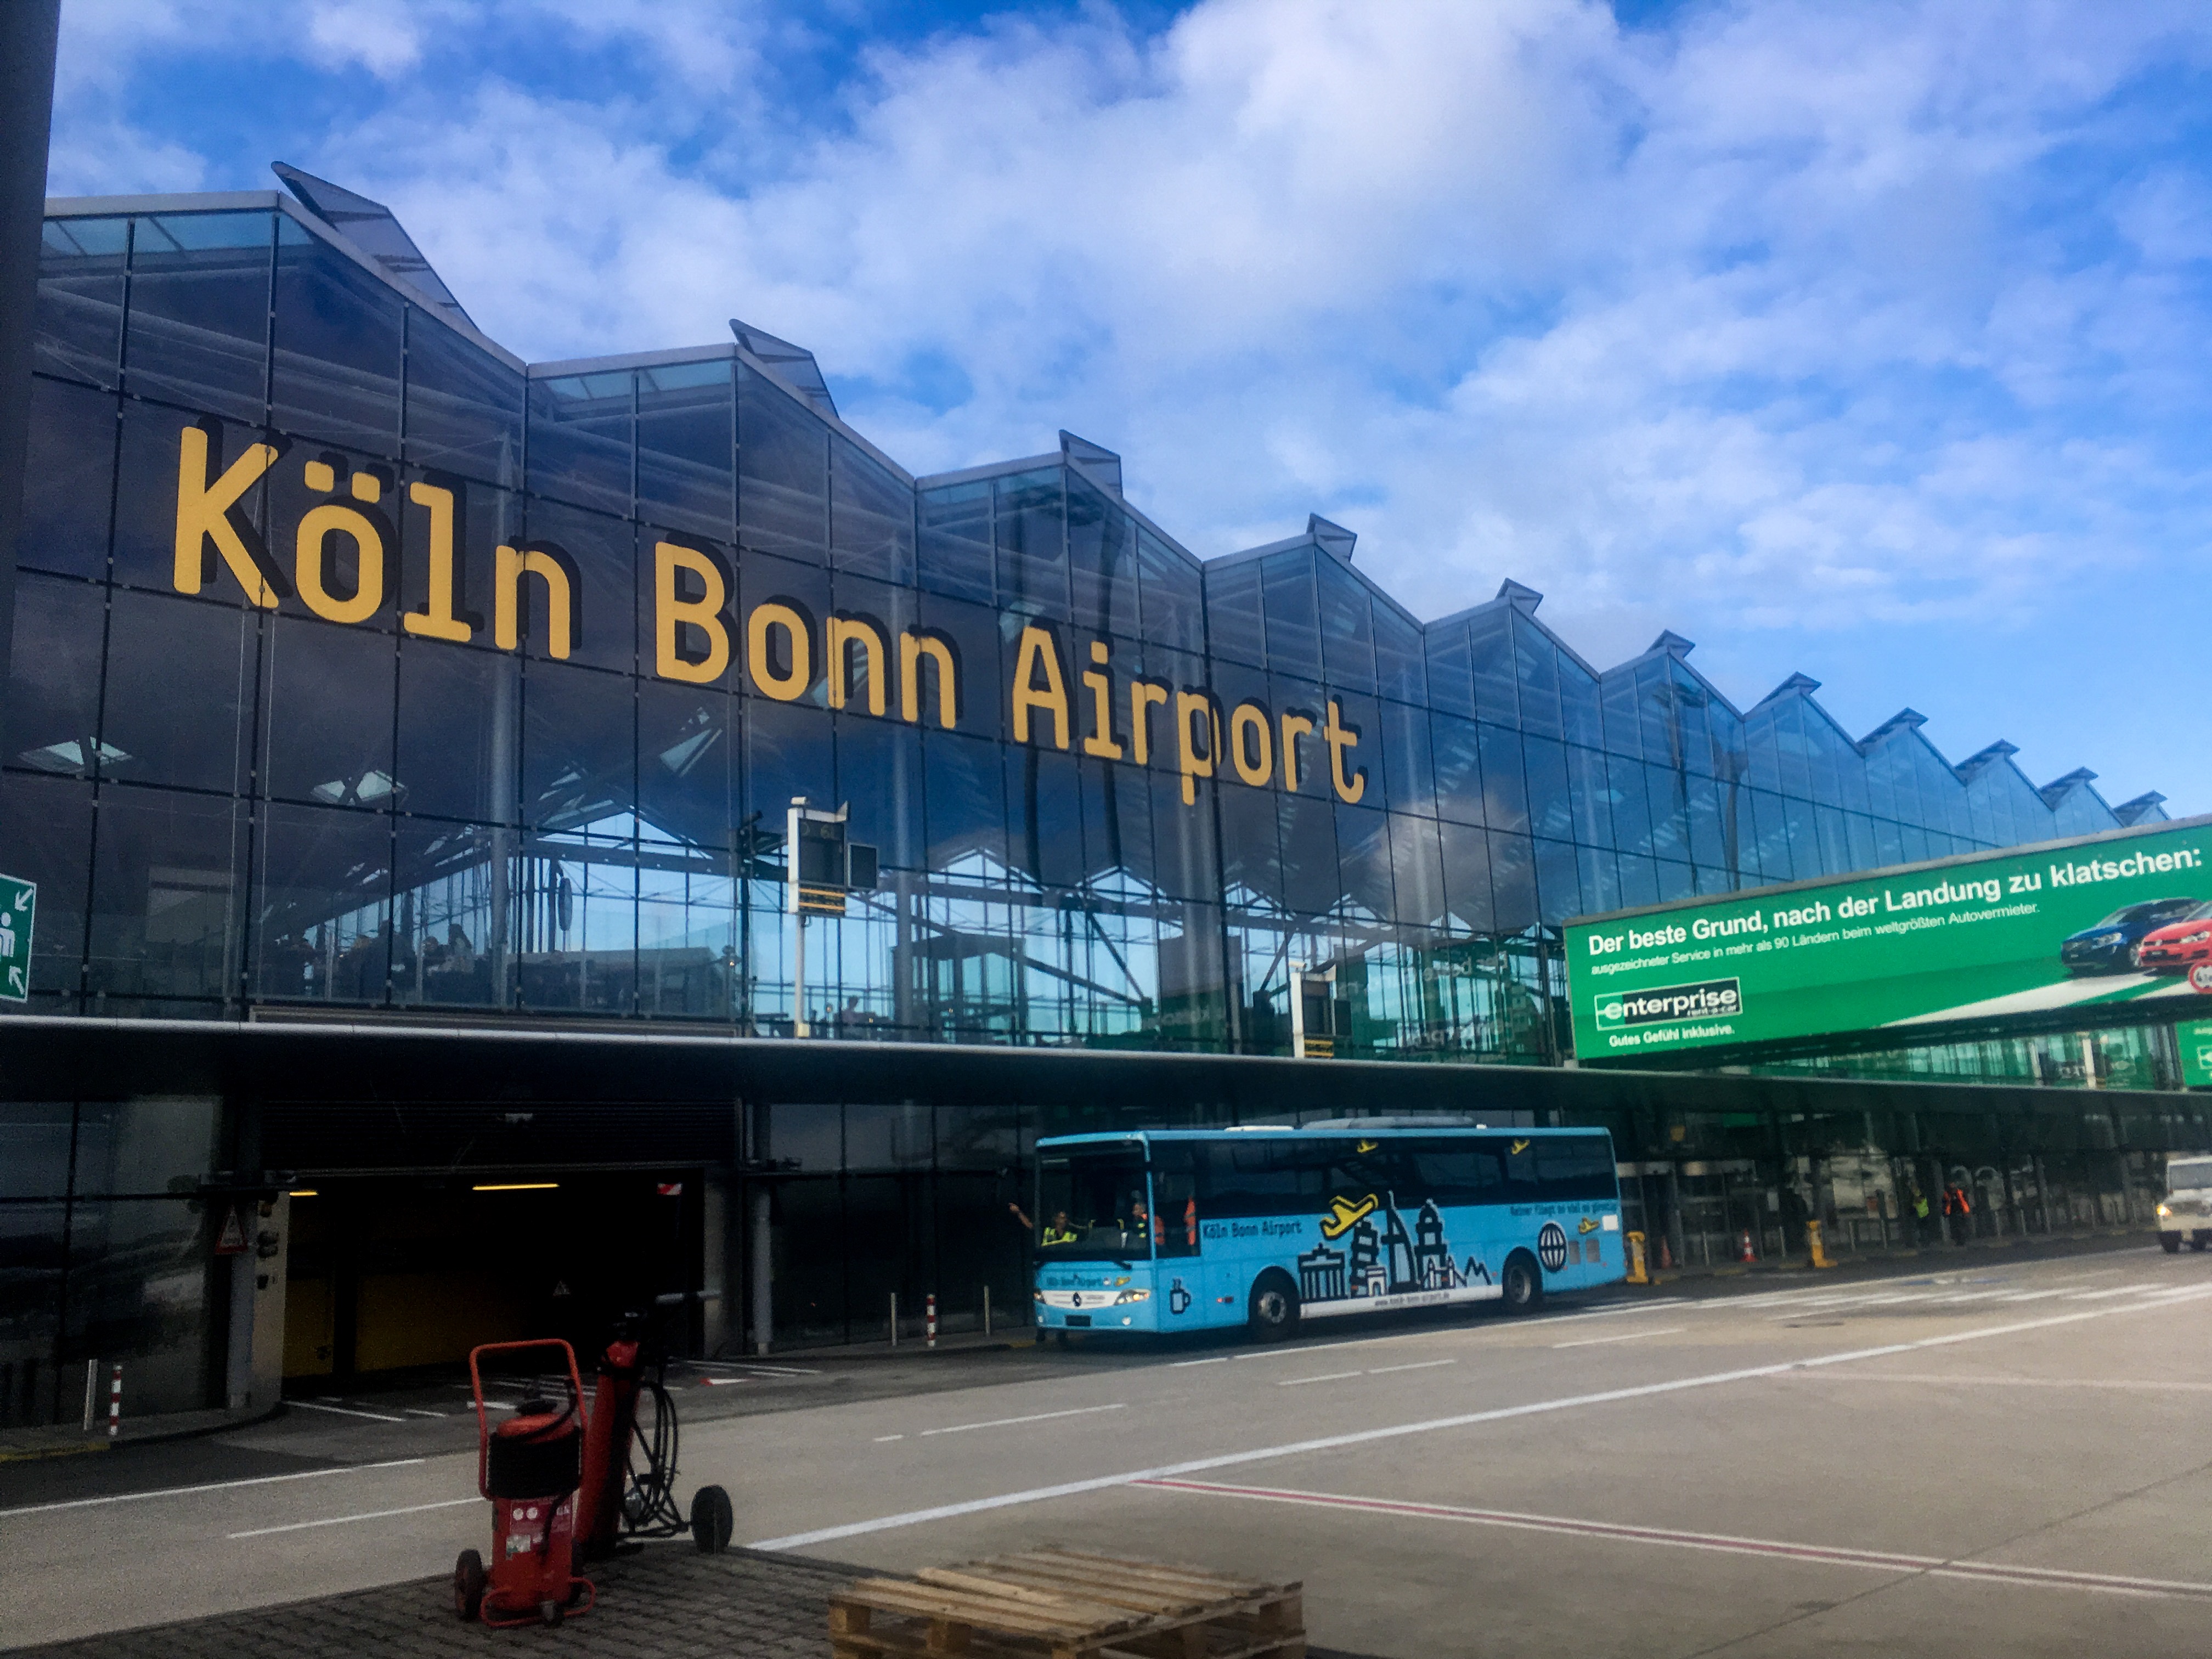 ドイツ ケルン中央駅からケルン ボン空港への行き方を解説 電車での移動がオススメ Tamasdesign